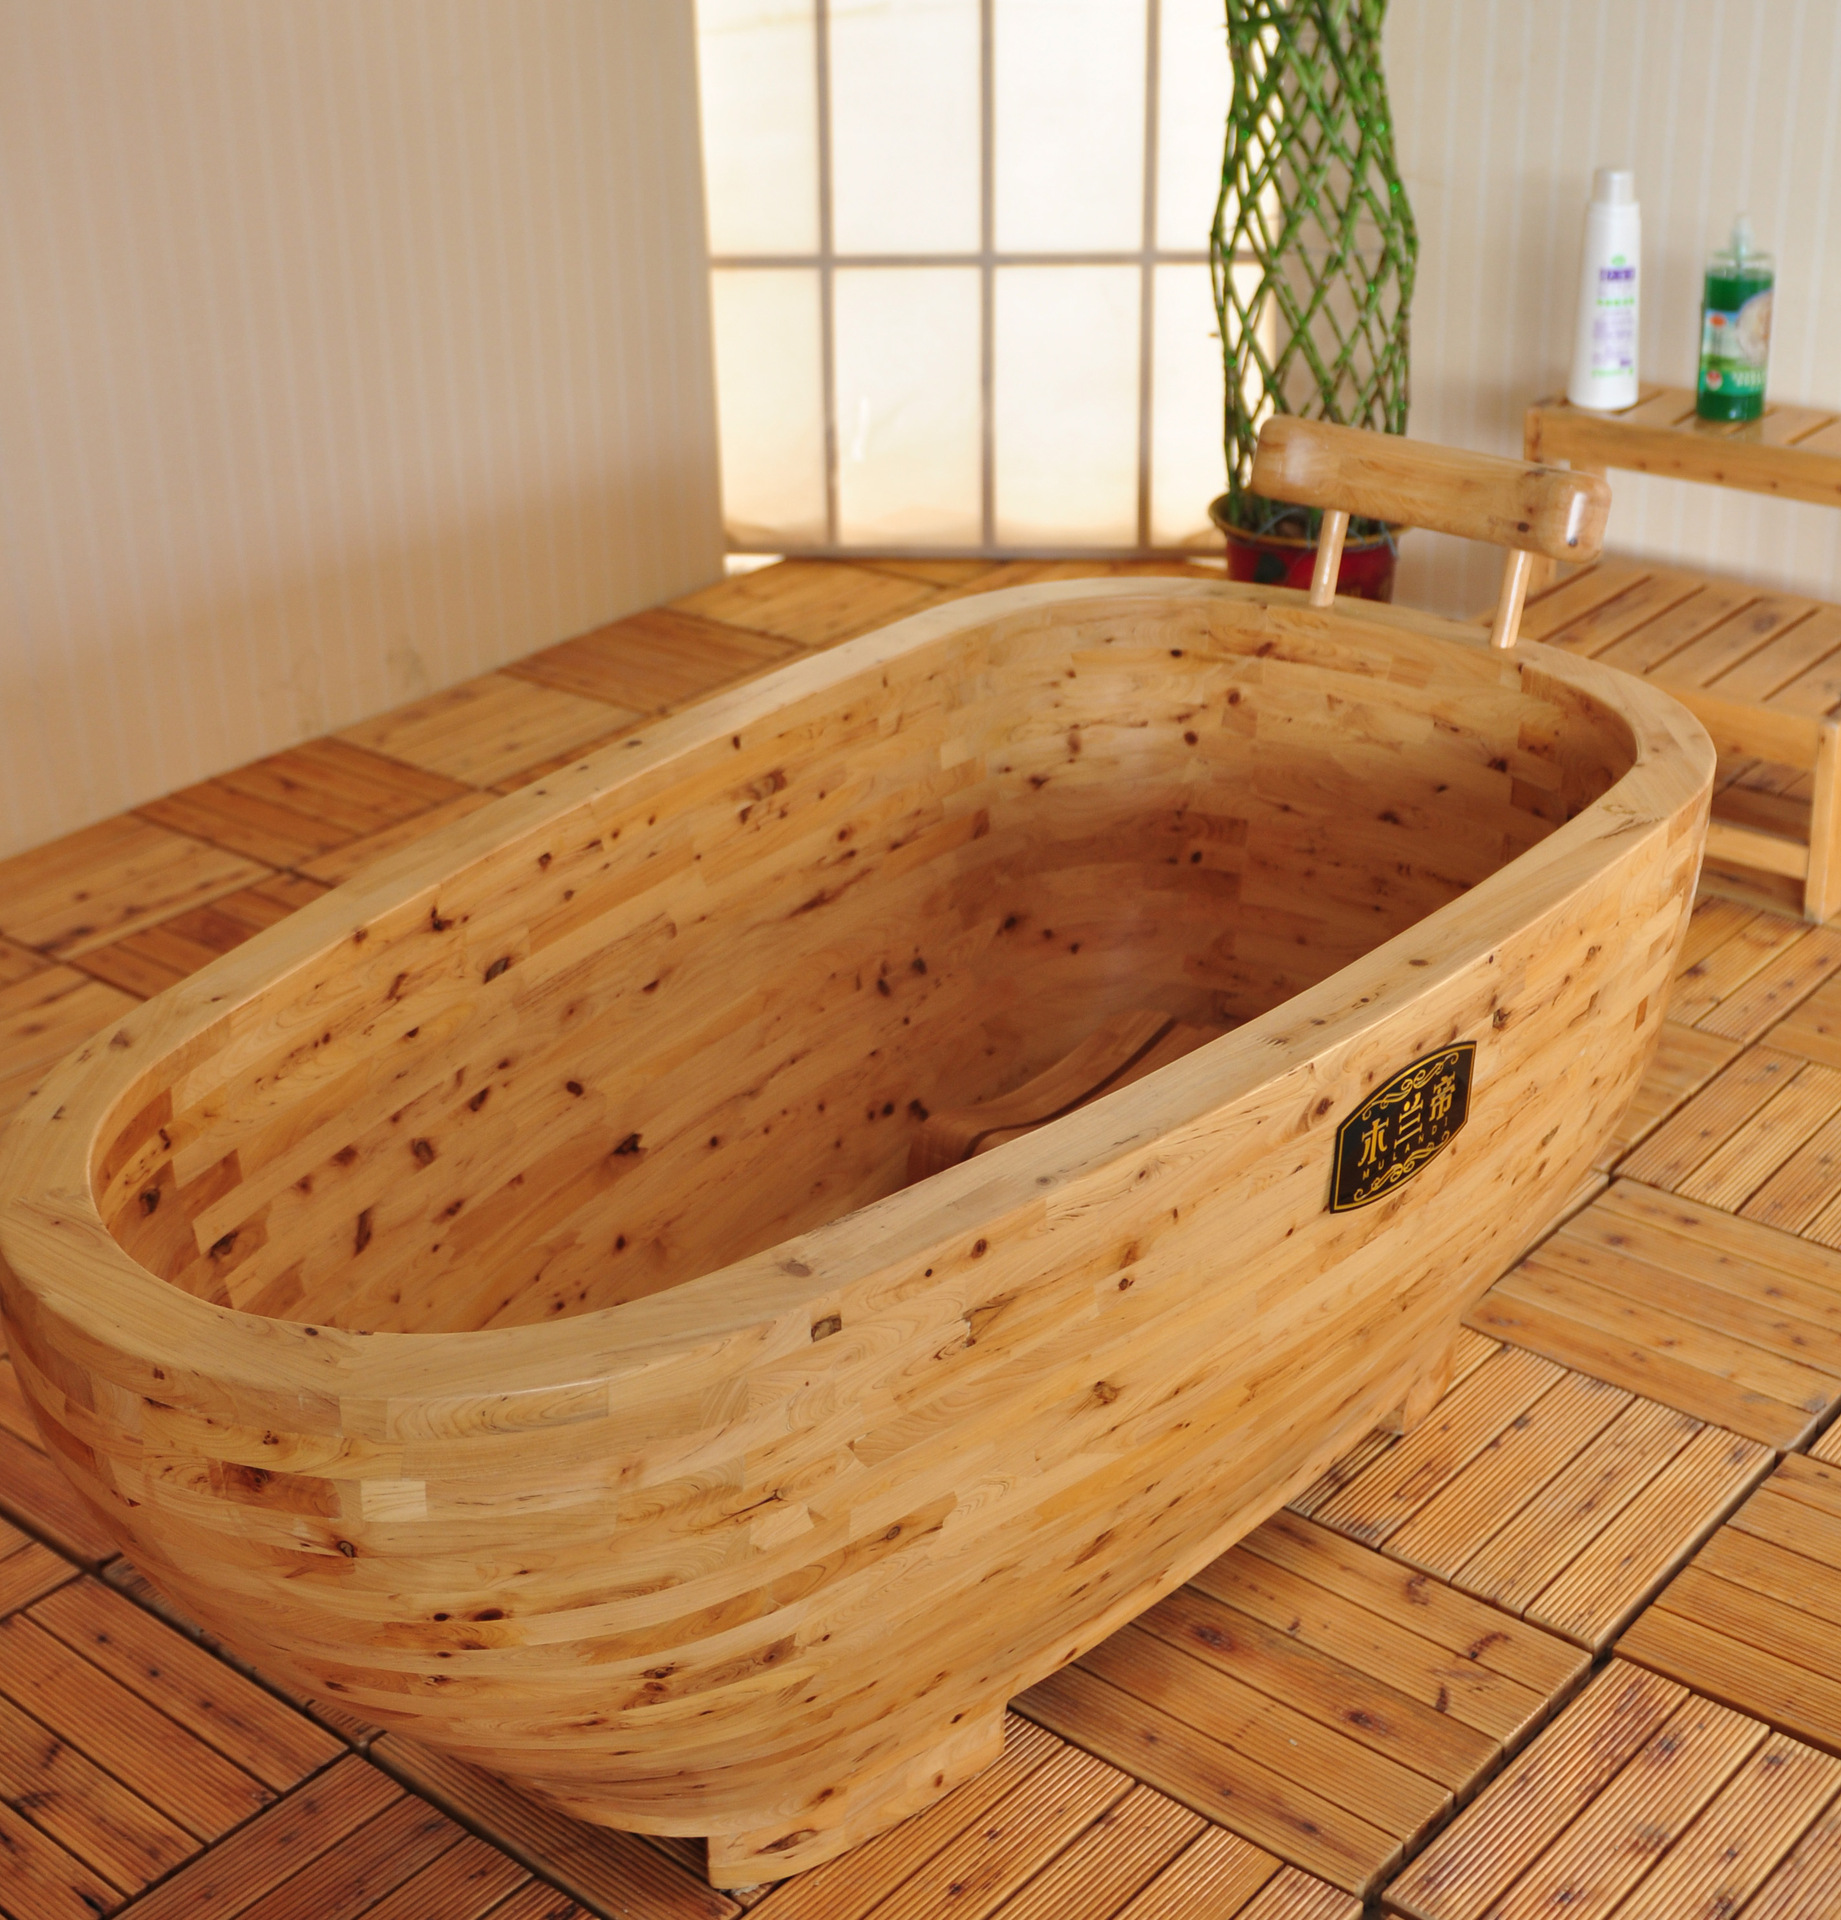 专供老人洗澡的木浴盆图片